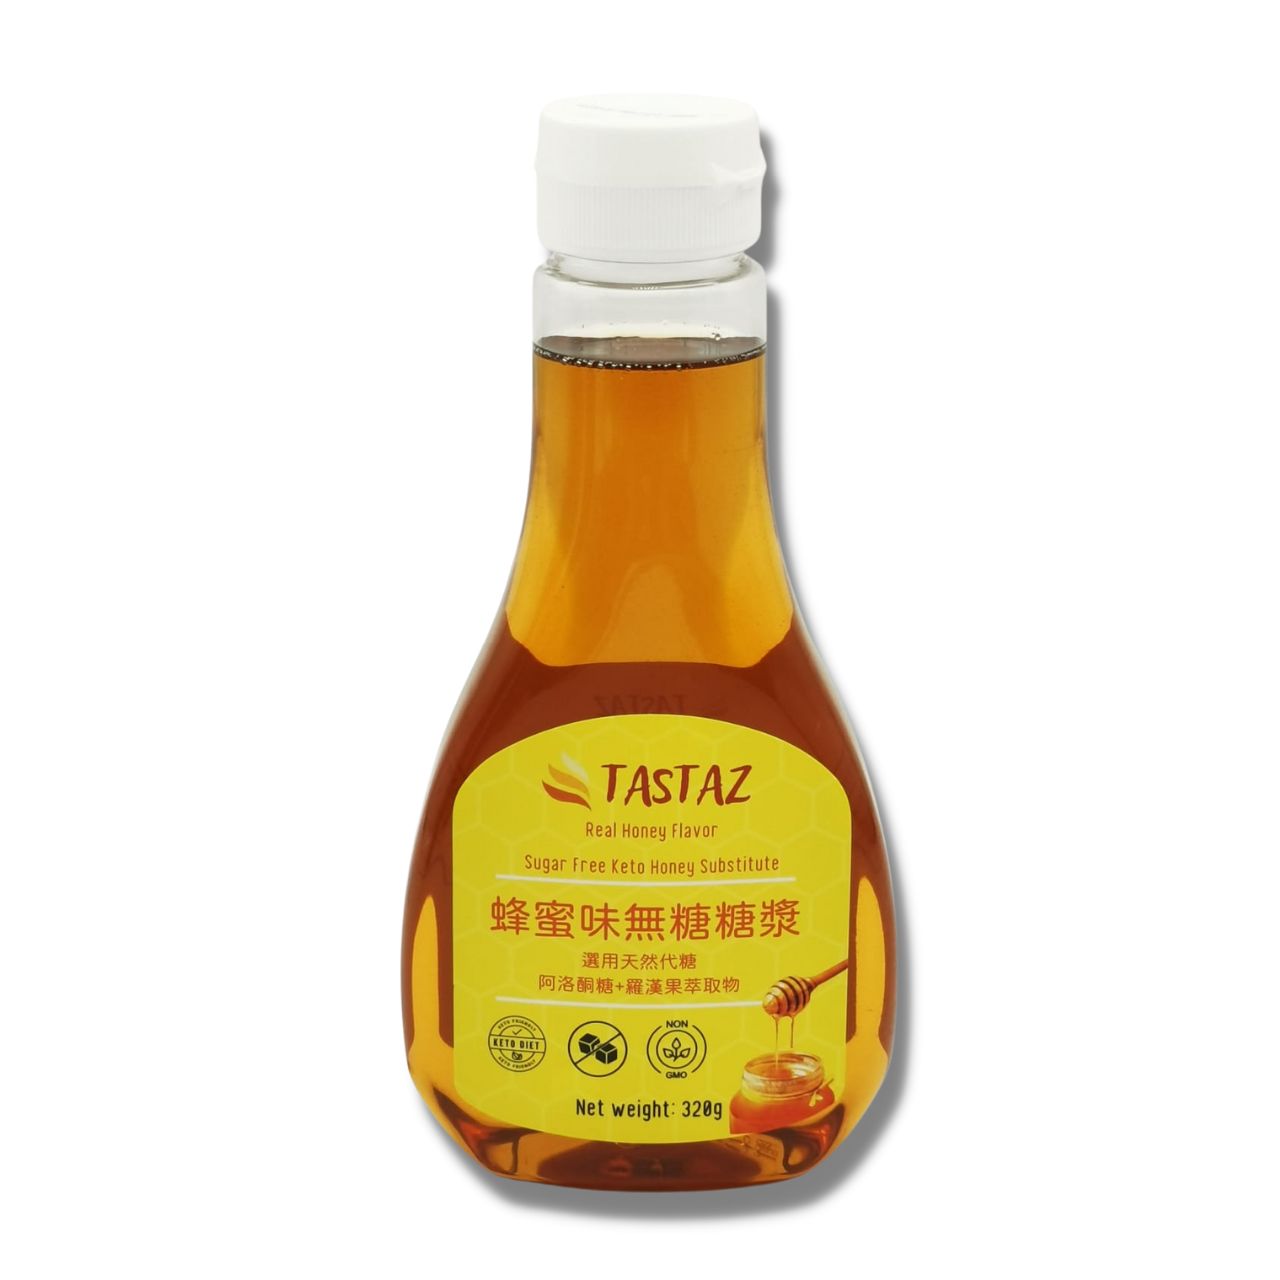 Tastaz Sugar Free Keto Honey Substitute 蜂蜜味無糖糖漿 320g